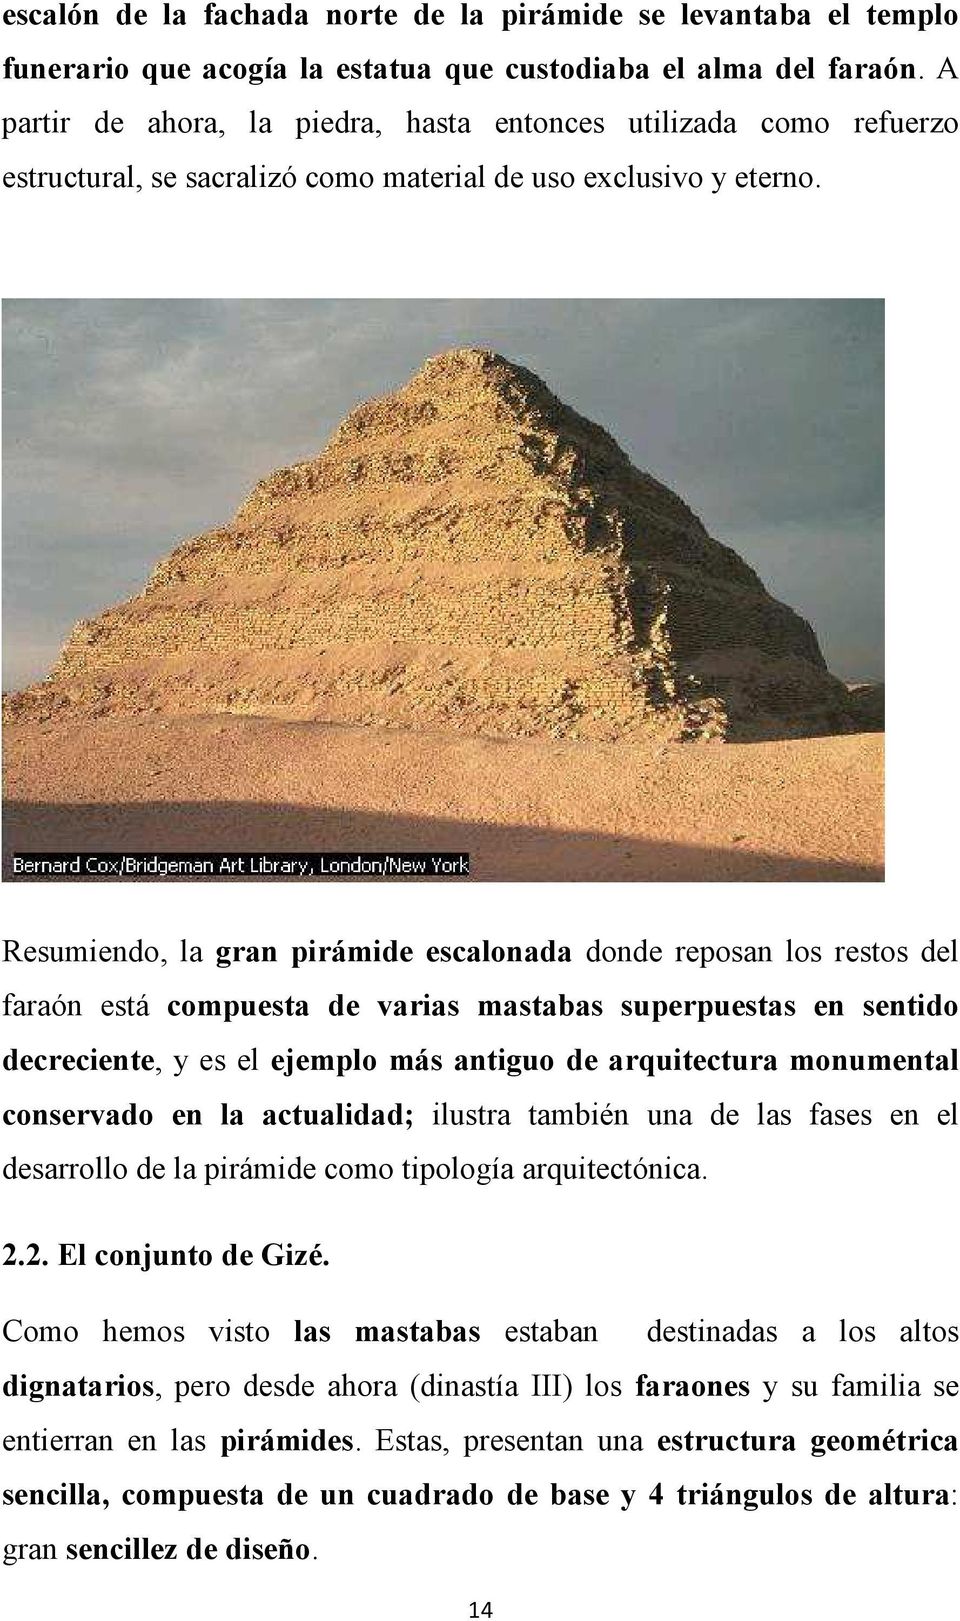 Resumiendo, la gran pirámide escalonada donde reposan los restos del faraón está compuesta de varias mastabas superpuestas en sentido decreciente, y es el ejemplo más antiguo de arquitectura